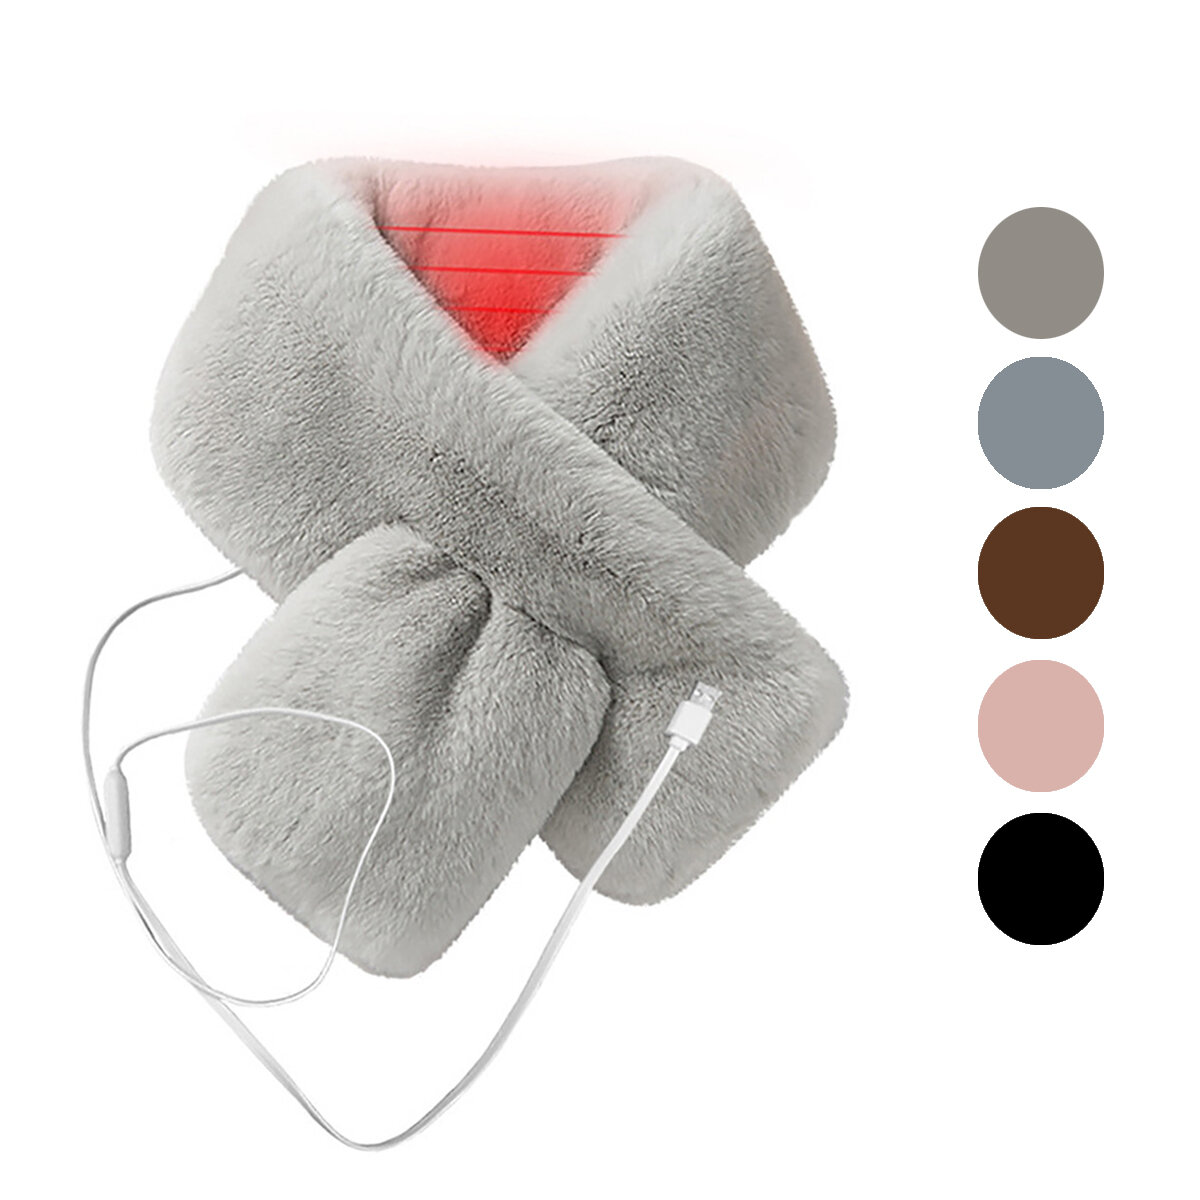 Ik heb een elektrische verwarmde sjaal voor vrouwen van dik pluche en imitatiebont, die kan worden aangesloten op een USB-poort en in de winter kan worden gebruikt om de nek op te warmen.